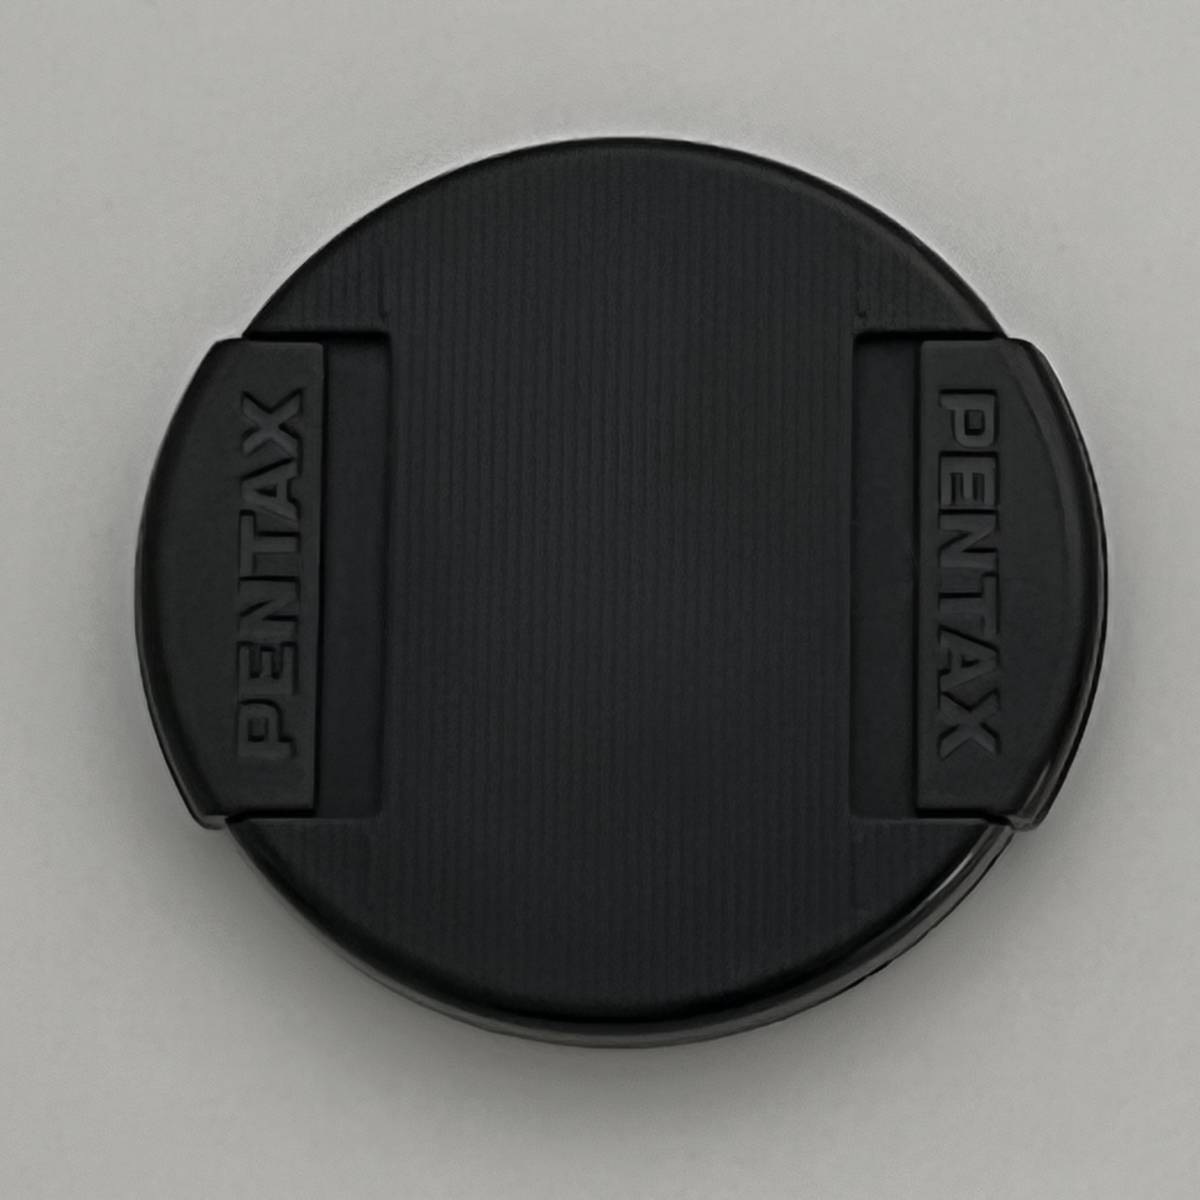 Pentax ペンタックス レンズキャップ 58mm C 027 高評価なギフト